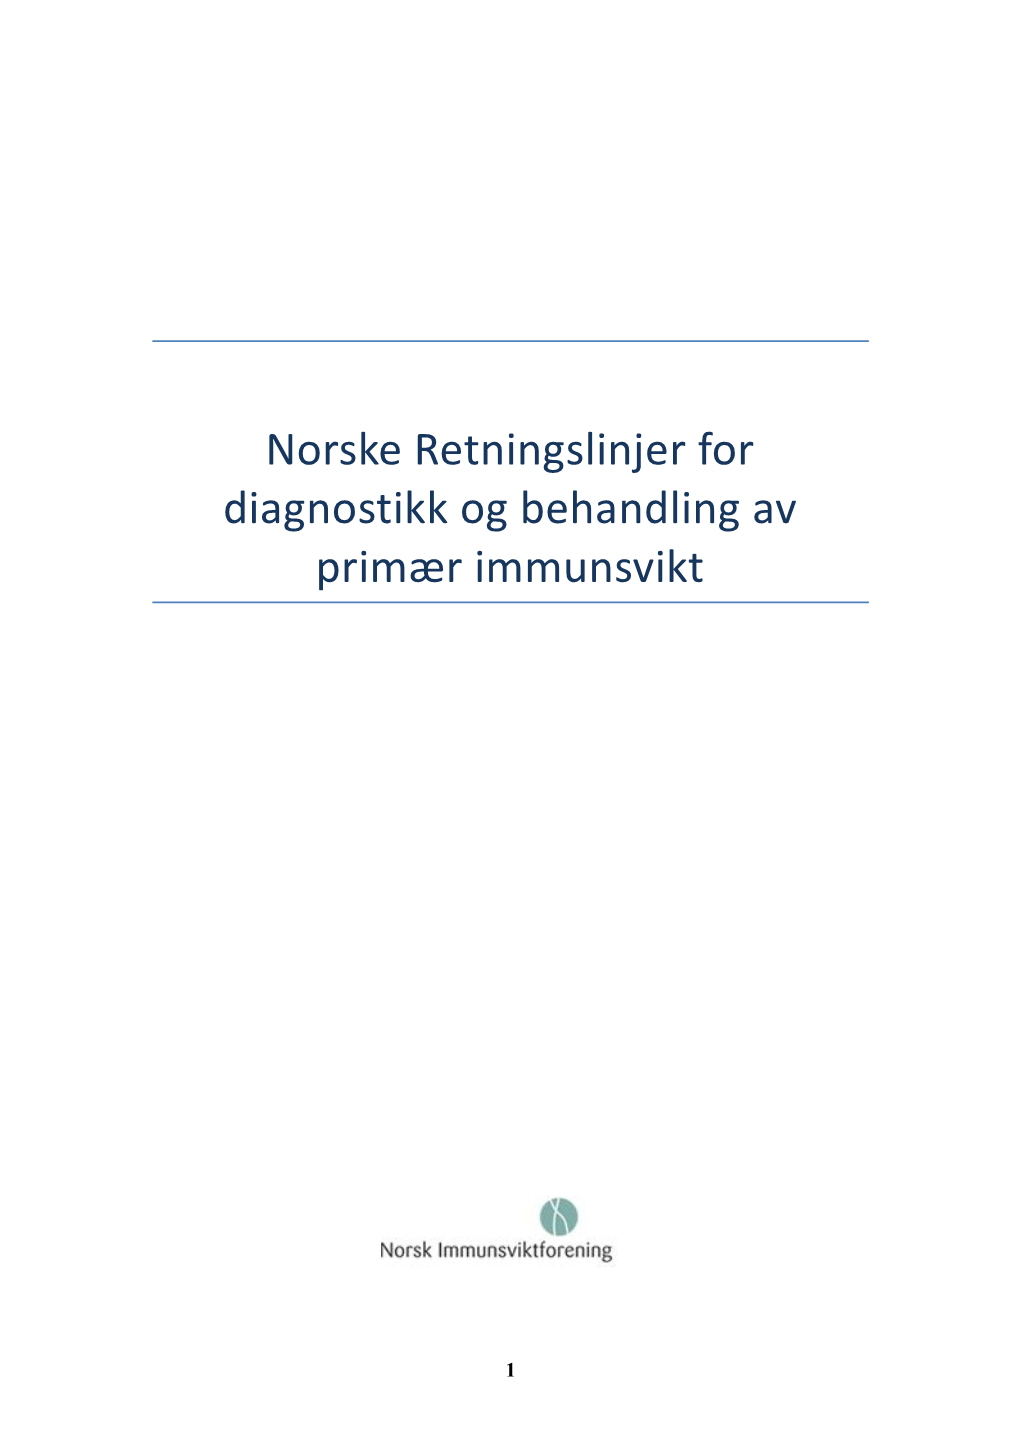 Norske Retningslinjer for Diagnostikk Og Behandling Av Primær Immunsvikt